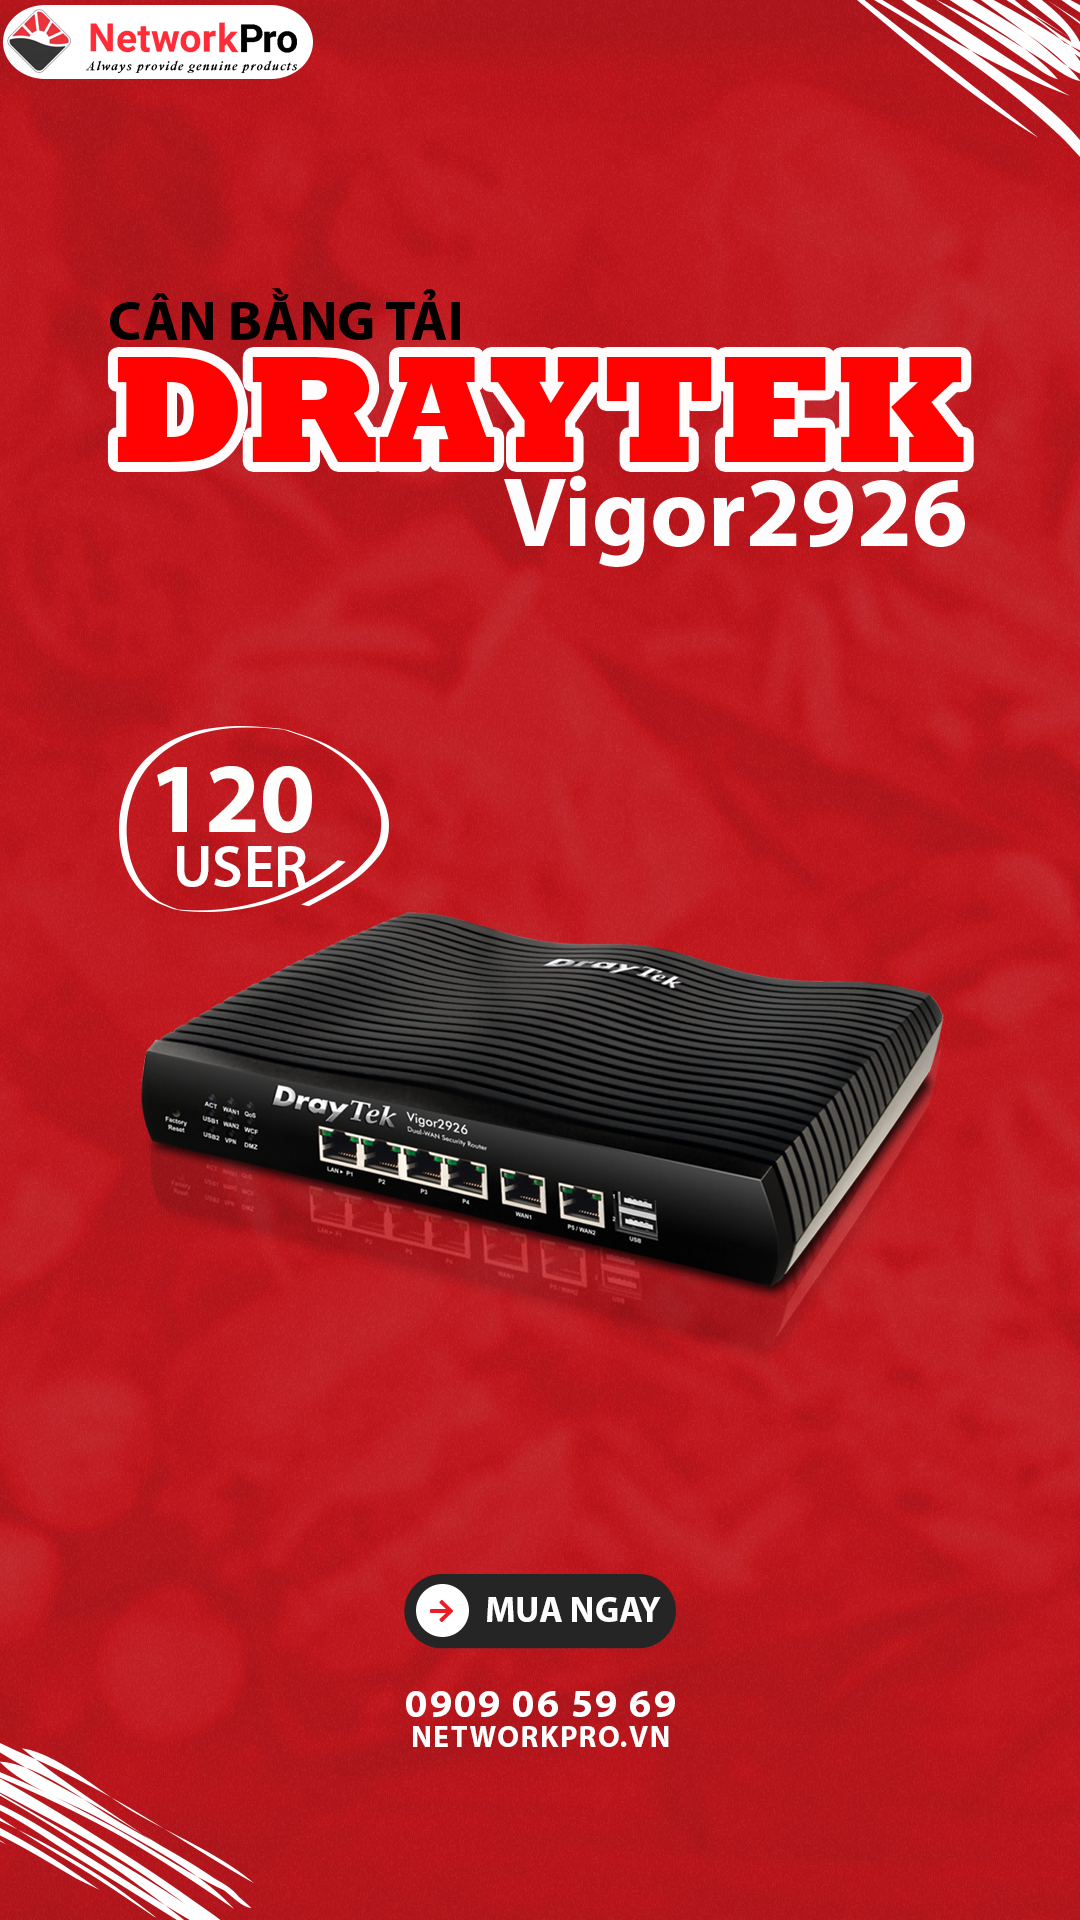 Router Draytek Vigor2926 - NetworkPro